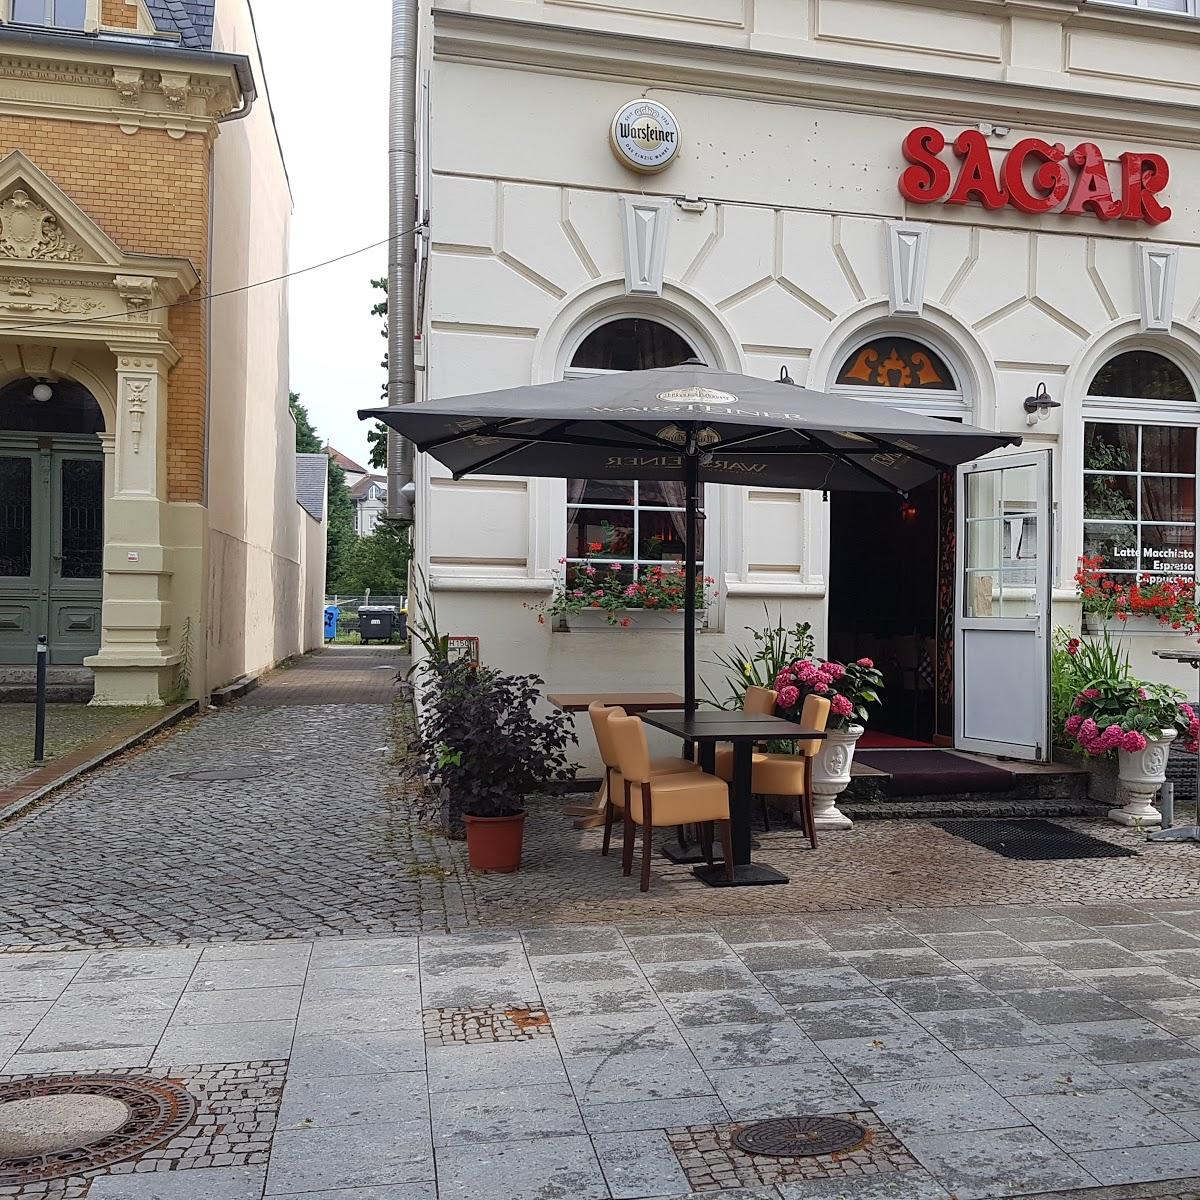 Restaurant "Sagar- Indisches Restaurant - Firmenfeiern & Weihnachtsfeiern Werder" in Werder (Havel)